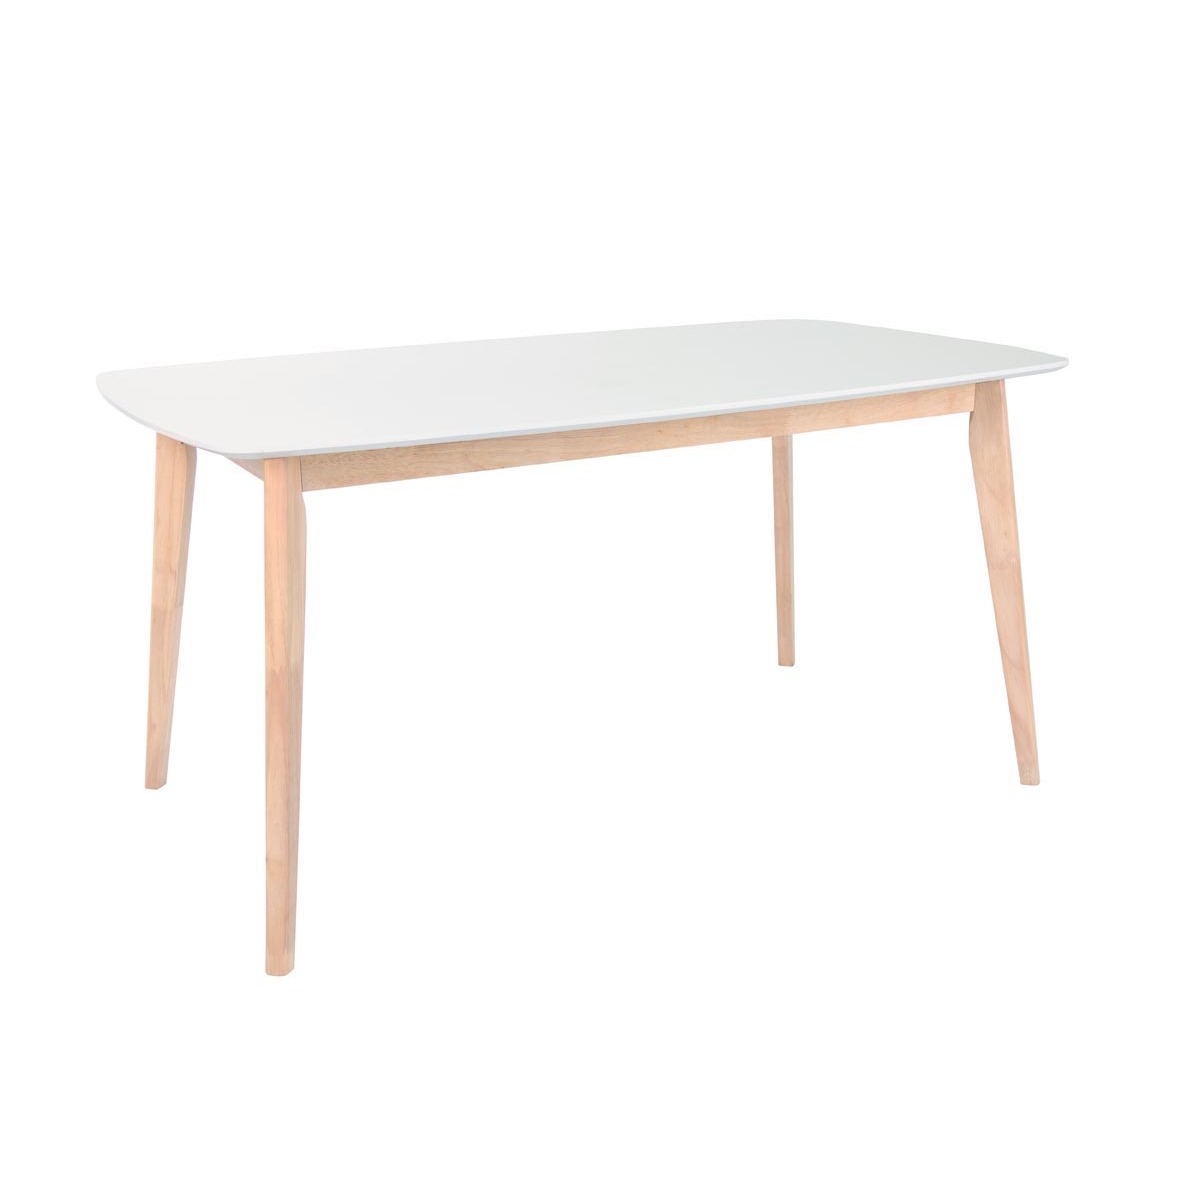 Table à manger design blanc et bois clair L120 cm LEENA vue1